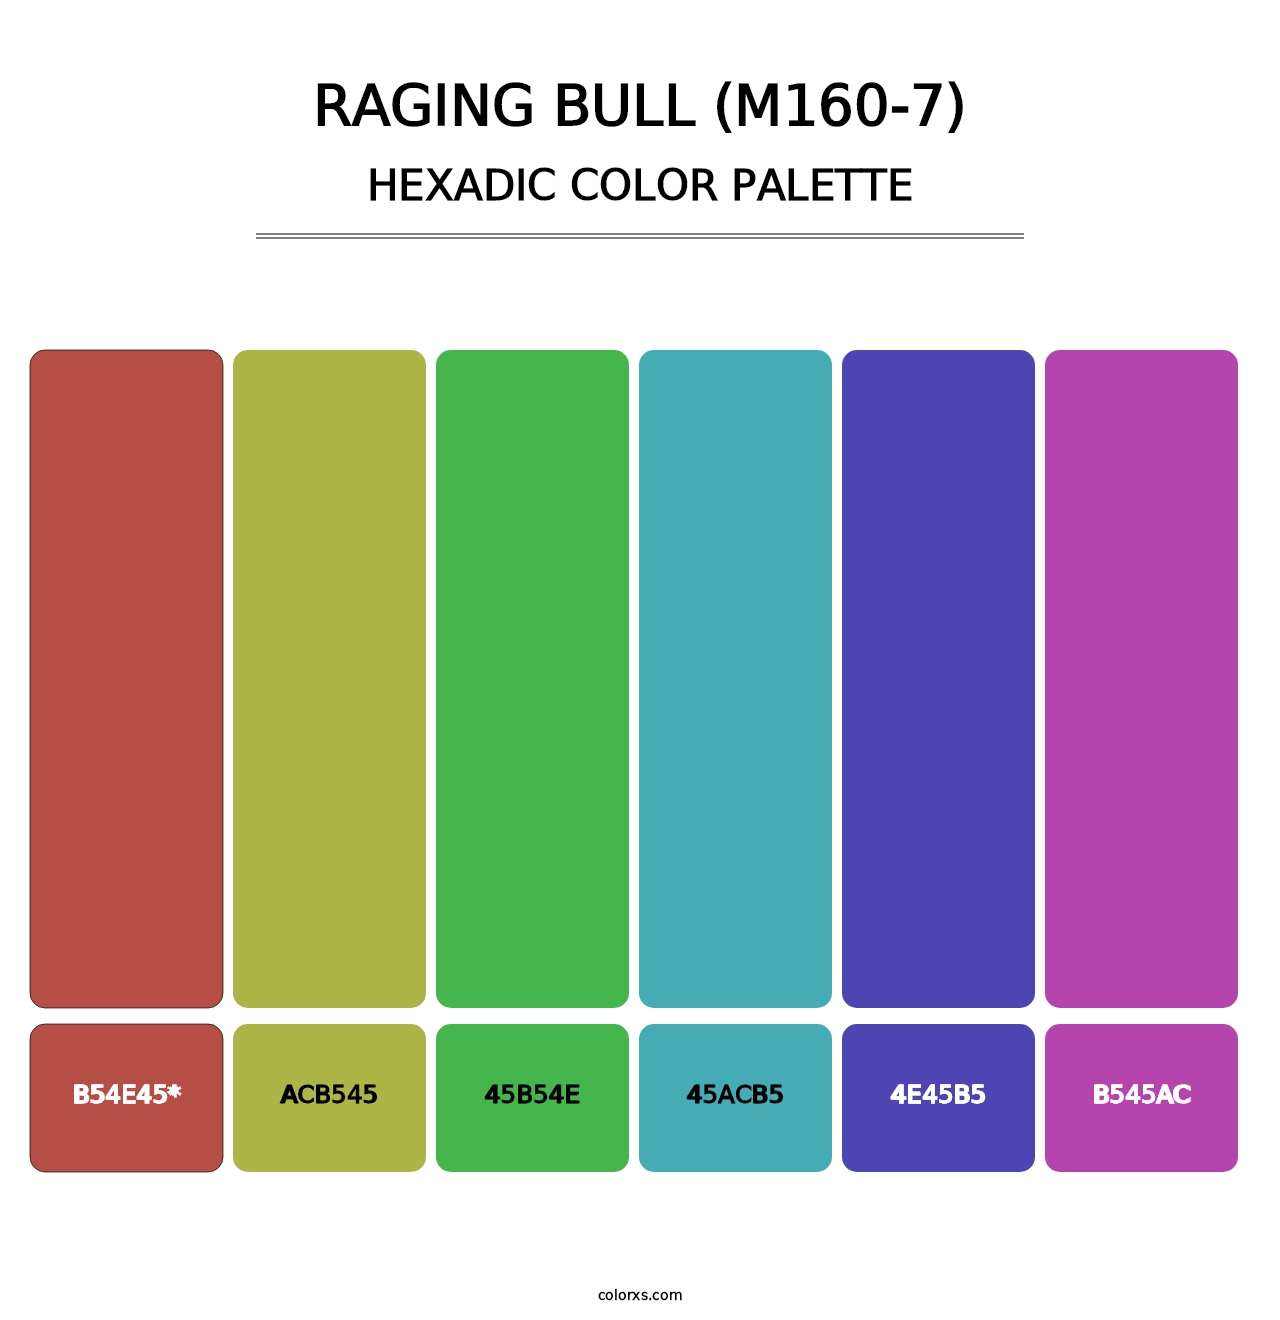 Raging Bull (M160-7) - Hexadic Color Palette